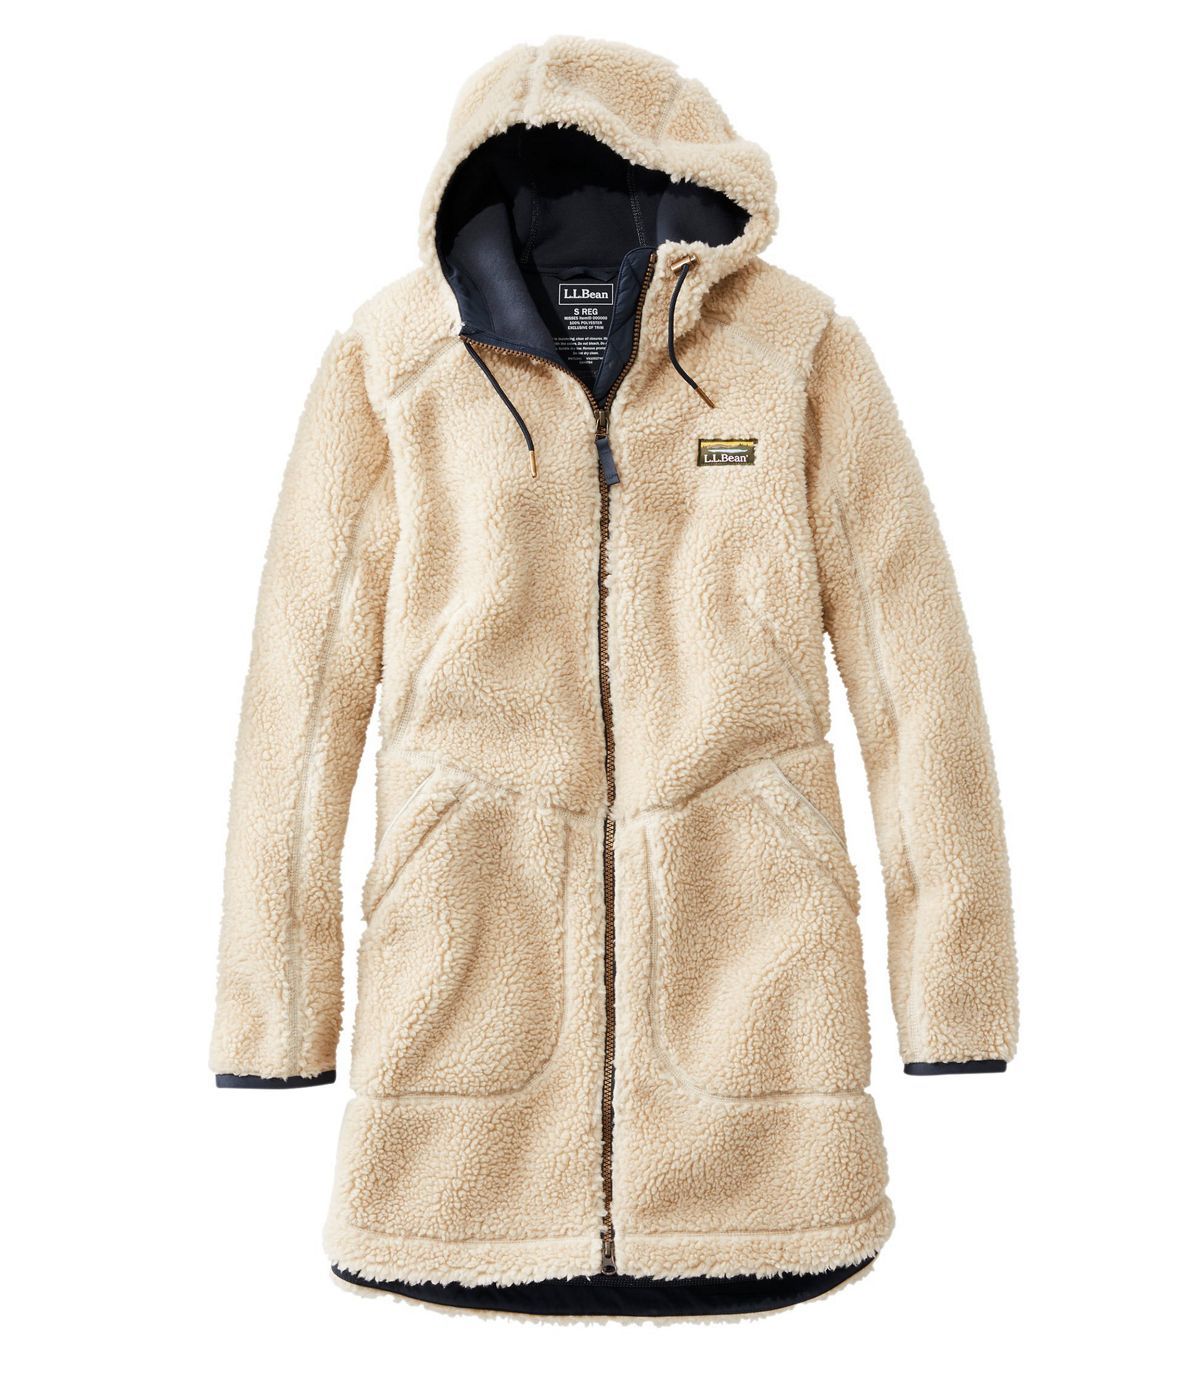 Yaiewey Coats for Women Dressy,Womens Winter Trendy Fuzzy Fleece Hooded Jackets Long Sleeve Wool Plus Size Jackets Coat 